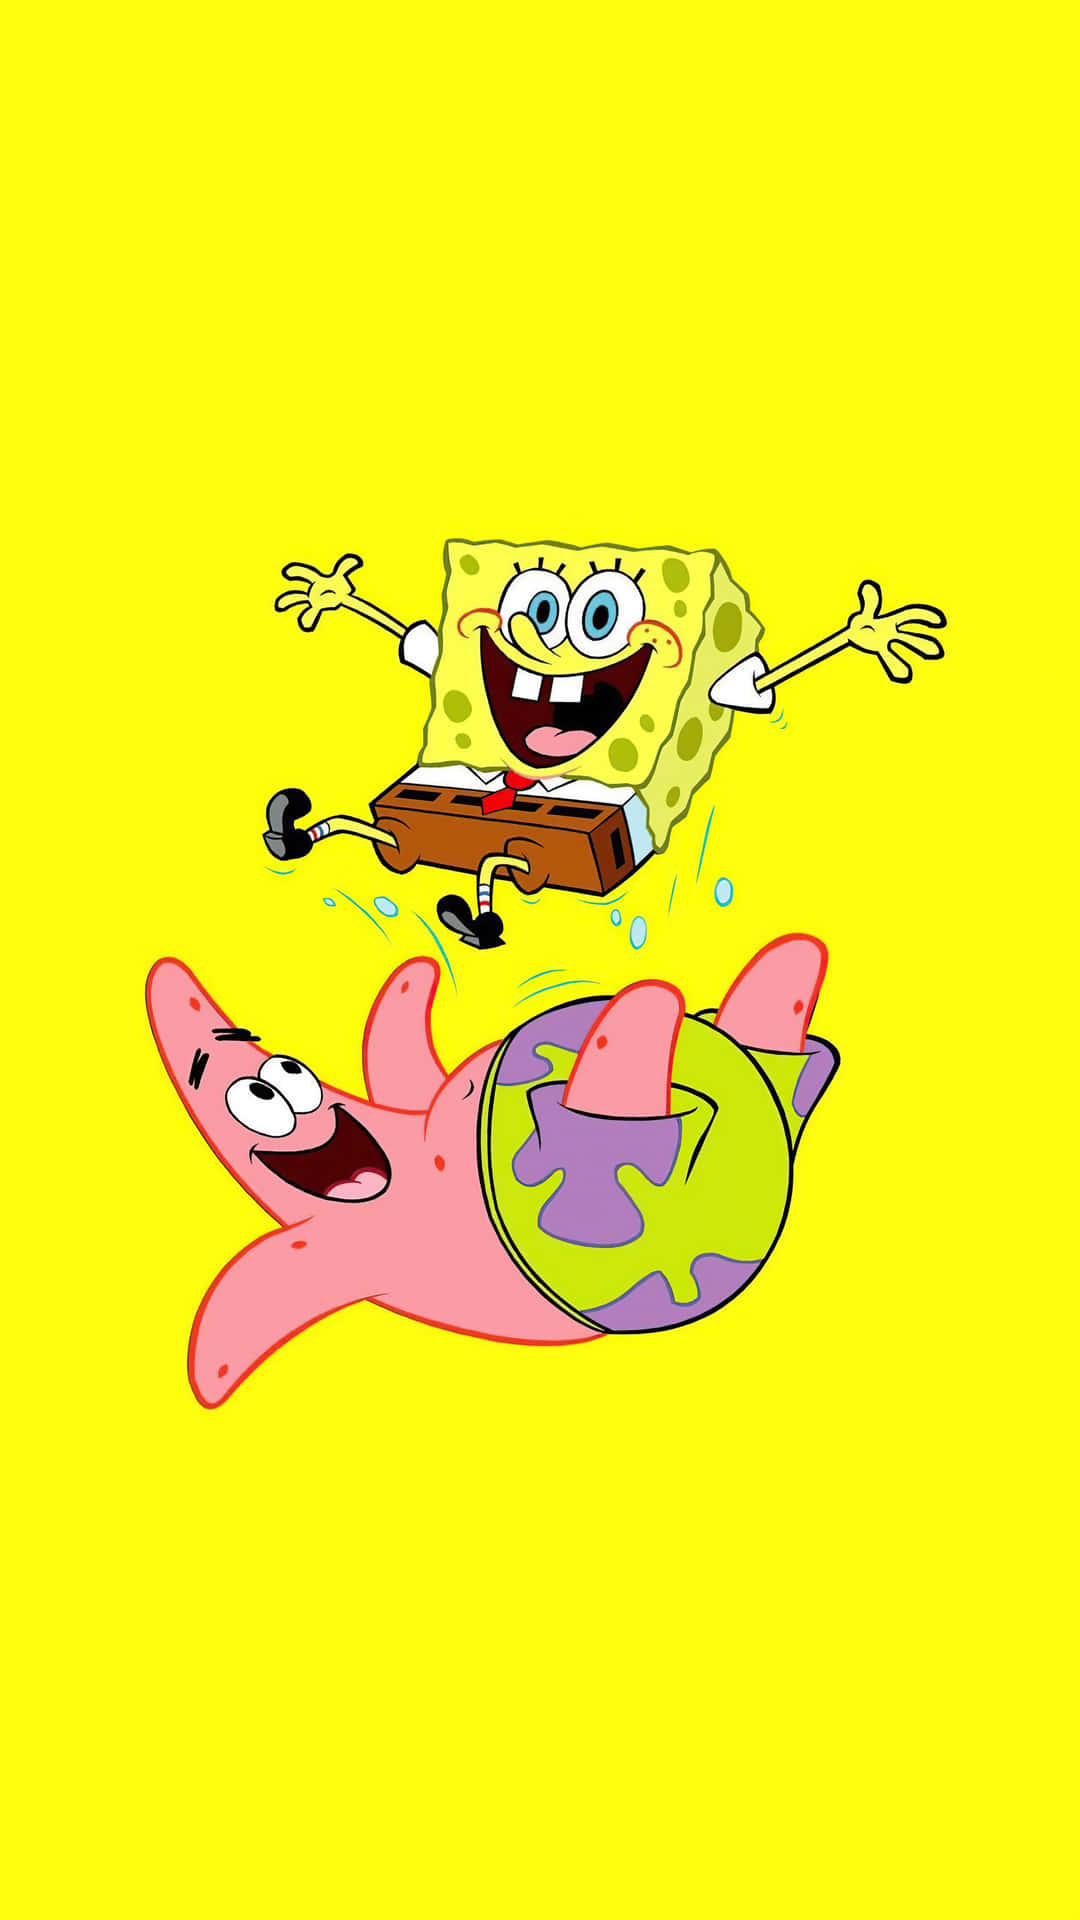 SpongeBob sings SAD! by XXXTENTACION 